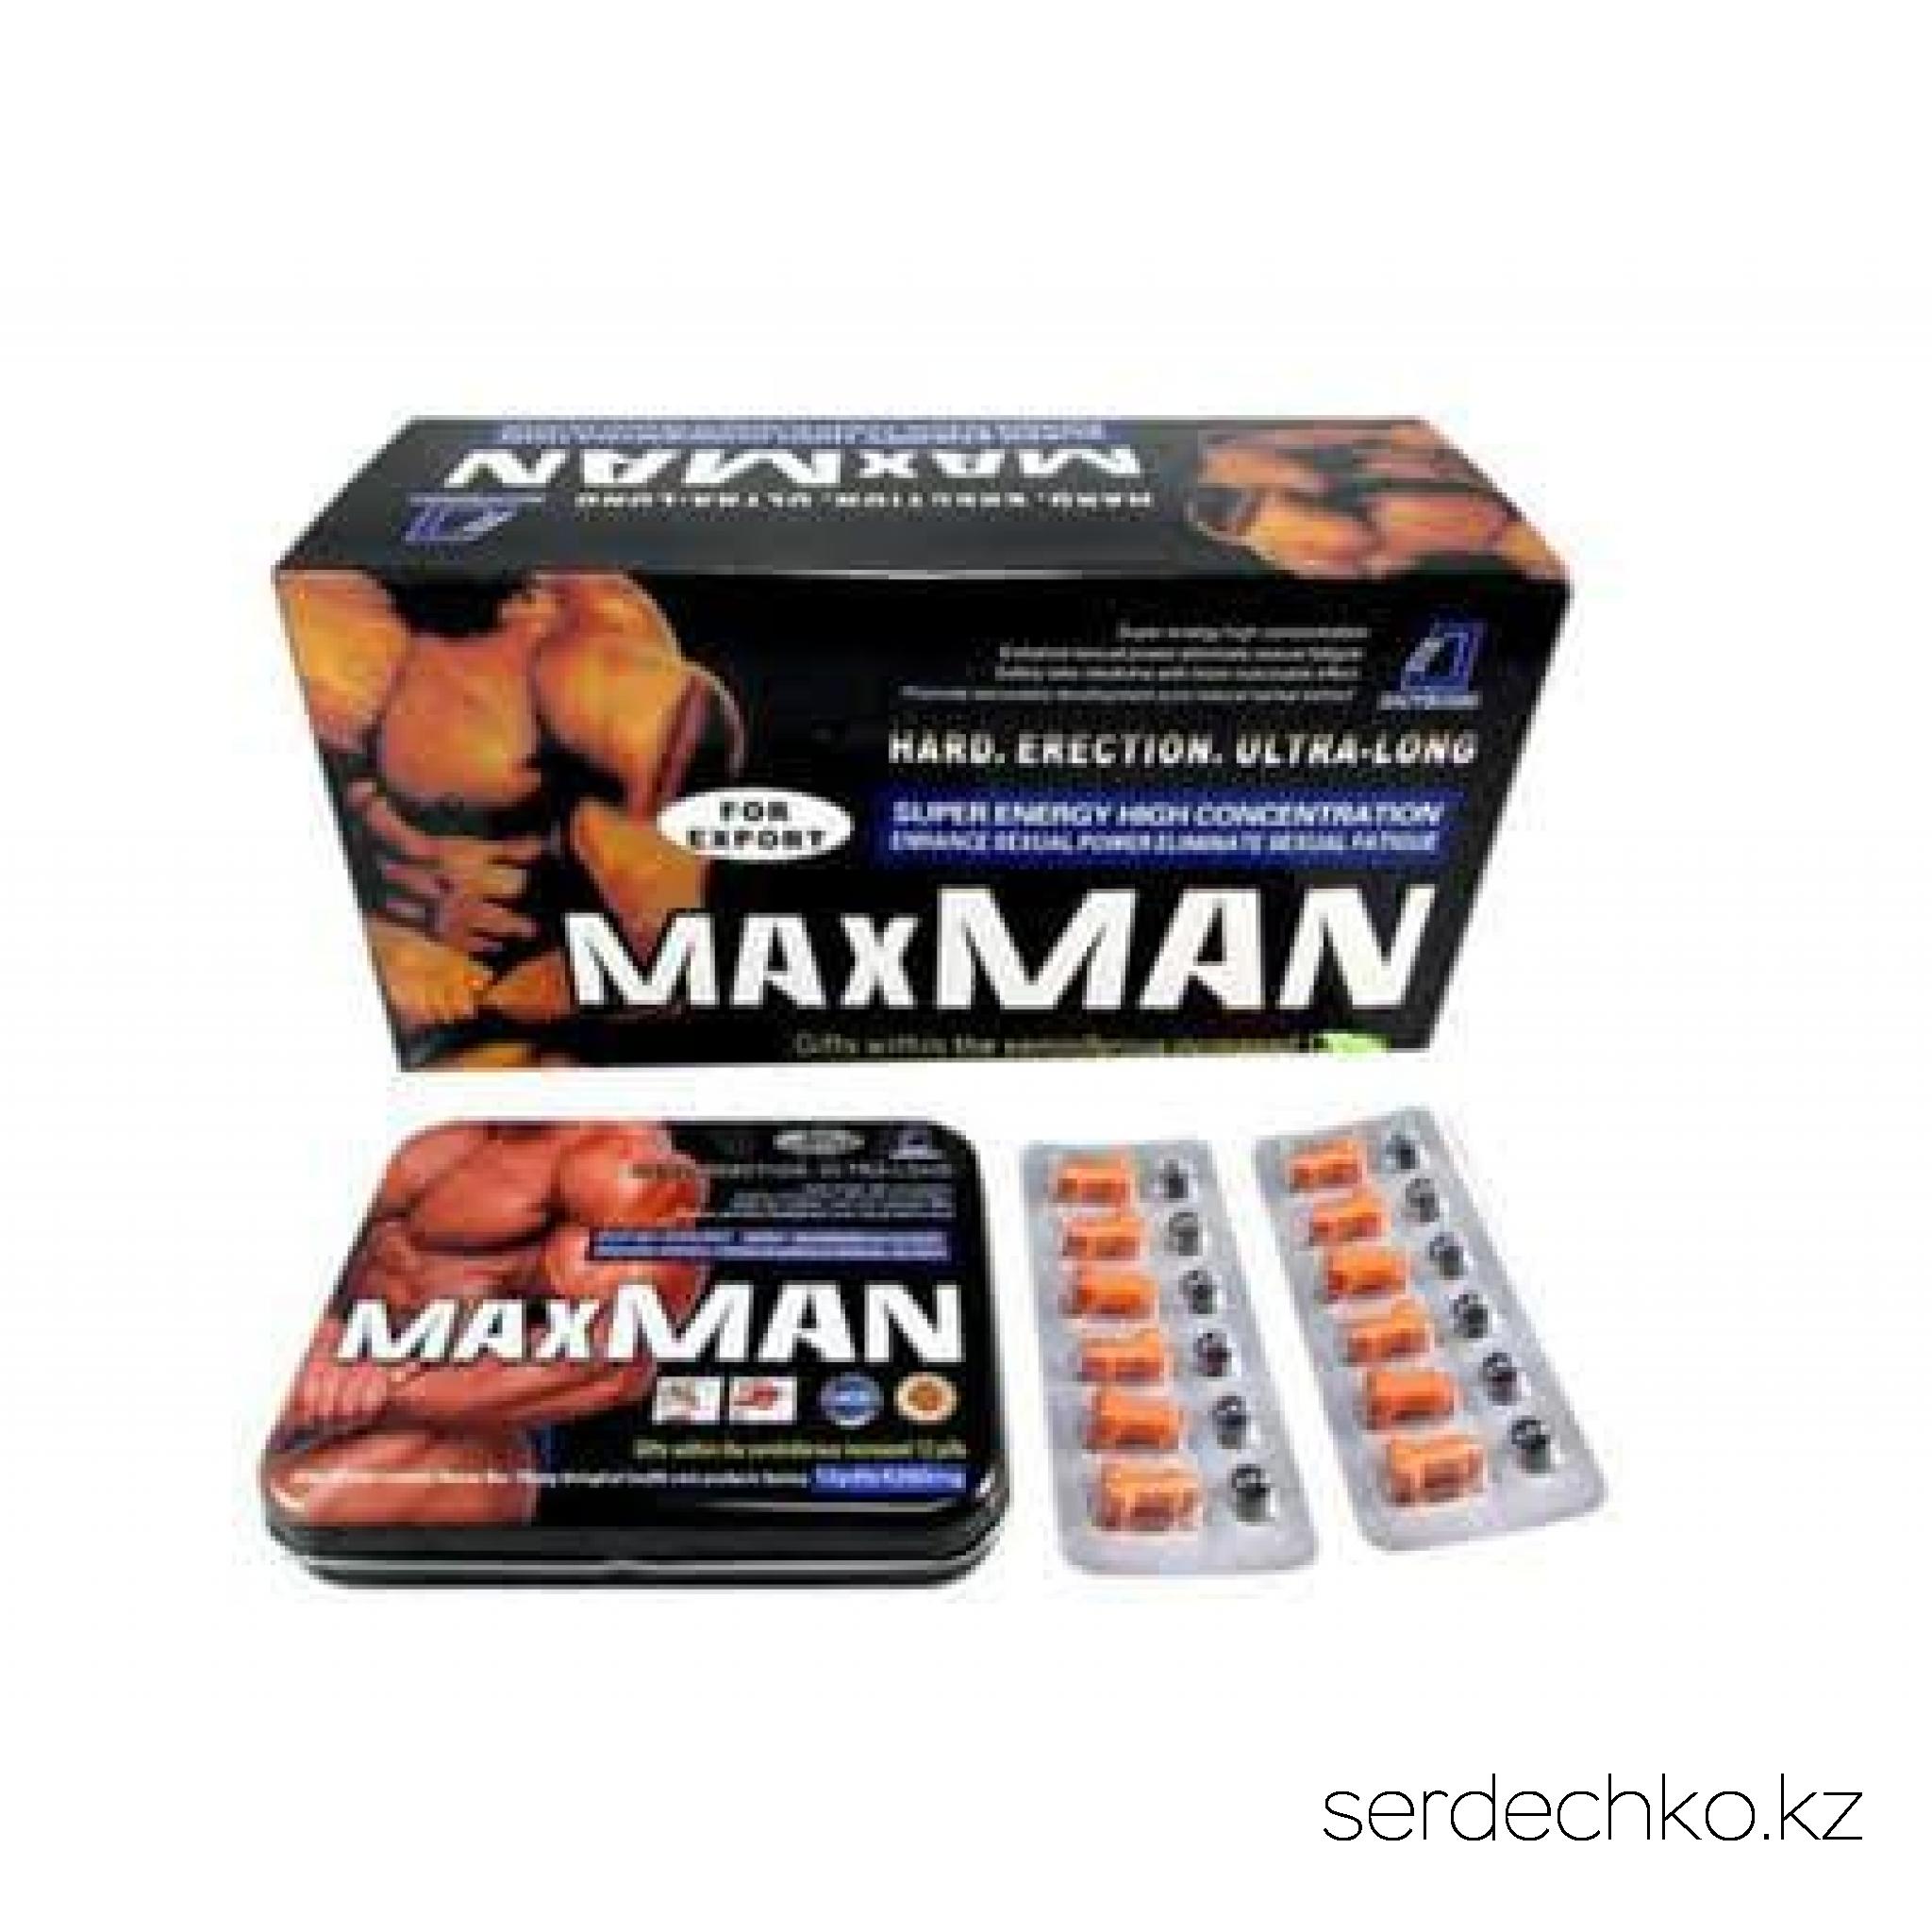 MAXMAN средство для повышения потенции, 
	Характеристики и описание

	
		
			
				
					
						Капсулы для эрекции «Maxman» (Максмен) — относятся к самым действующим препаратам для помощи излечения мужских сексуальных недугов. Эффективен настолько, что за самые короткие промежутки временные меняет сексуальную жизнь мужского населения в положительном смысле. Капсулы для эрекции «Maxman» (Максмен) действуют на потенцию, на размеры полового органа, а самое важное, что полученные итоги будут стабильными, даже по средствам прекращения применения средства. Капсулы для эрекции «Maxman» (Максмен) поможет сильной части населения распрощаться со всеми приобретенными или врождёнными болезнями сексуального направления. Секс по времени будет занимать гораздо больше, а самое важное, длительность вы сможете регулировать сами. После соития временное восстановление всего организма тоже короткое. Мужчина становится более уверенным и самодостаточным. Качество секса, да и количество наполняет мужчину жизненным тонусом.
					
						Капсулы для эрекции "Maxman" (Максмен) инструкция по применению и отзывы: как уже многим известно, и проводились опыты и исследования, время до оргазма у сильной и слабой половины населения совершенно разная. Женщинам необходимо больше времени до достижения апогея в половом акте. Для трети слабого населения для достижения оргазма требуется до двенадцати минут, а мужчины выдерживают до восьми минут. Именно капсулы для эрекции "Maxman" (Максмен) продлят временной промежуток у мужчин, таким образом, качество половой жизни стабилизируется, и в итоге остаются восторженными обе стороны.
					
						Действие капсул для эрекции "Maxman" (Максмен): капсулы для эрекции "Maxman" (Максмен) значительно укрепляют половую силу мужчин. Продлевают время сексуальных утех. Без труда становится контролируемая эрекция и эякуляция. Сперматозоиды вырабатываются активные и в большом количестве.
					
						Время действия капсул для эрекции "Maxman" (Максмен): действует одна капсула до сорока восьми часов.
					
						Состав капсул для эрекции "Maxman" (Максмен): наблюдаются разнообразные вытяжки не синтетического происхождения, а естественного.   А именно: китайский кордицепс, женьшень в корне, моринда, эпимедиум, Astragalus, а так же иные компоненты, которые часто встречаются в китайской медицине.
					
						Показания к применению капсул для эрекции "Maxman" (Максмен): рекомендуется при: эрекции несвоевременной и недостаточной, коротком сексуальном соитии (по времени), нарушения мочеполовой и почечной систем, при неудовлетворительных размерных характеристиках пениса.  
					
						Способ применения капсул для эрекции "Maxman" (Максмен): перед непосредственным приёмом пищи необходимо до двух раз в сутки выпивать по капсуле. Время приёма капсул для эрекции "Maxman" (Максмен) рекомендованное (в курсе лечения) до двух месяцев. Разжевывать нельзя, обильно запивать чистой, водой, по возможности несколько подогретой.
					
						Применение капсул для эрекции "Maxman" (Максмен) у детей: восемнадцать с плюсом — рекомендованный возраст.
					
						Применение у пожилых пациентов: приём капсул для эрекции "Maxman" (Максмен) пациентами за шестьдесят только под медицинским присмотром.  
					
						Применение при беременности и кормлении грудью: средство не рассчитано, на приём женщинами.
				
			
		
	


	 
